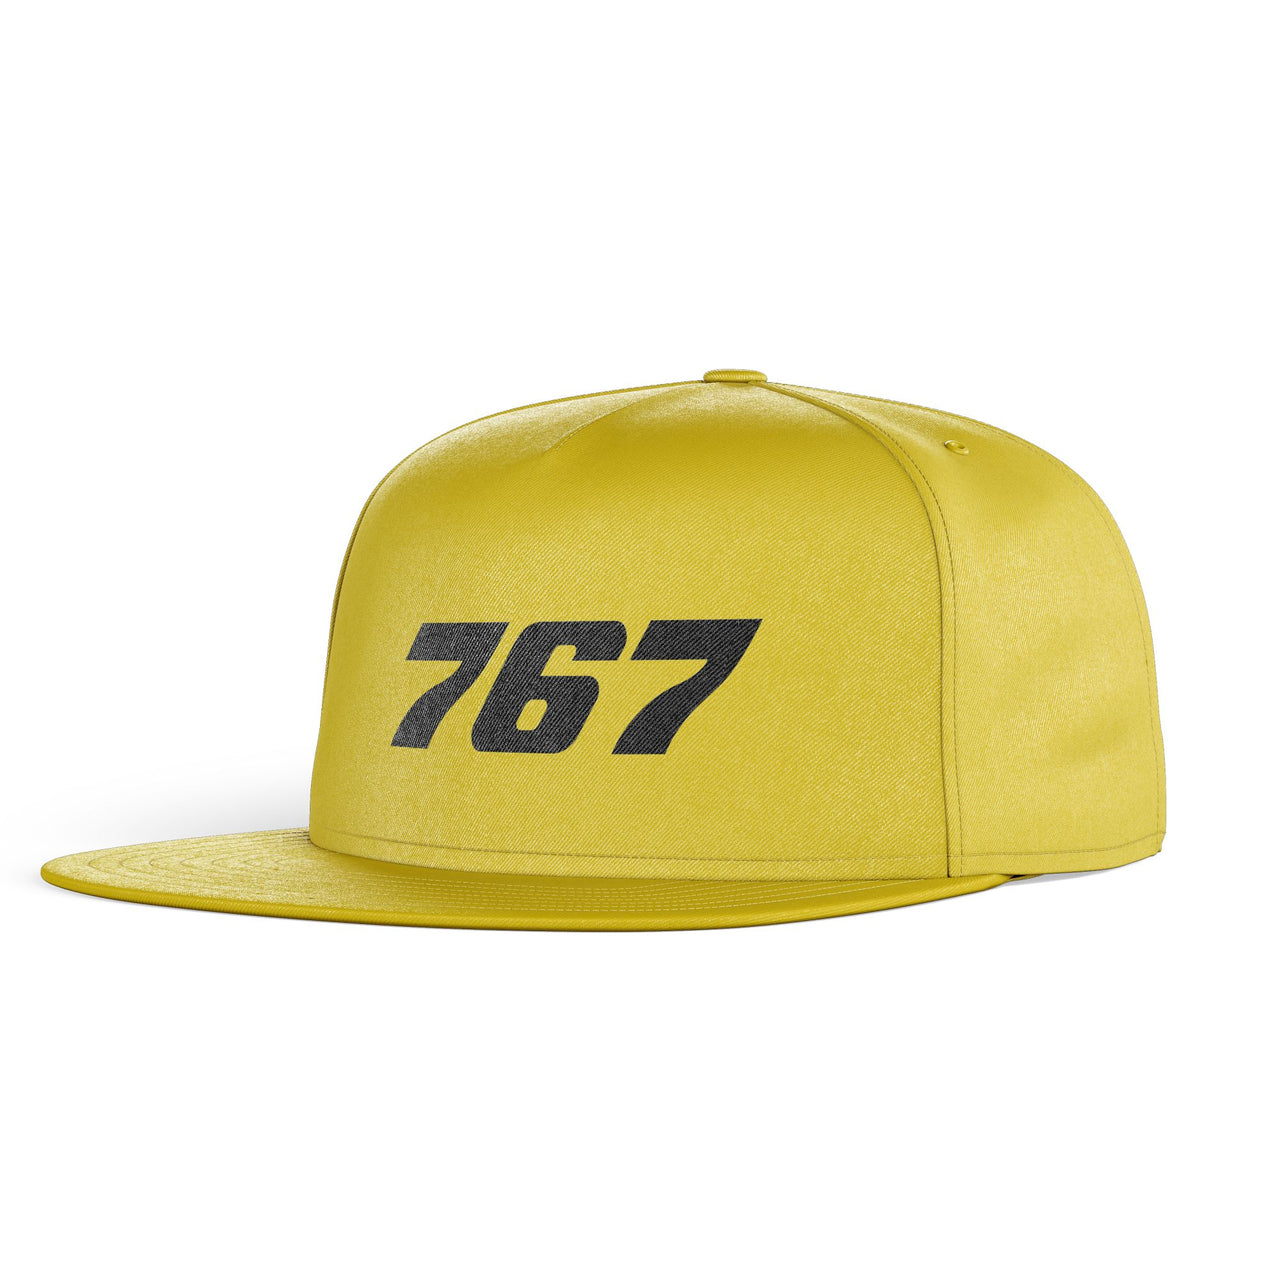 767 Flat Text Designed Snapback Caps & Hats